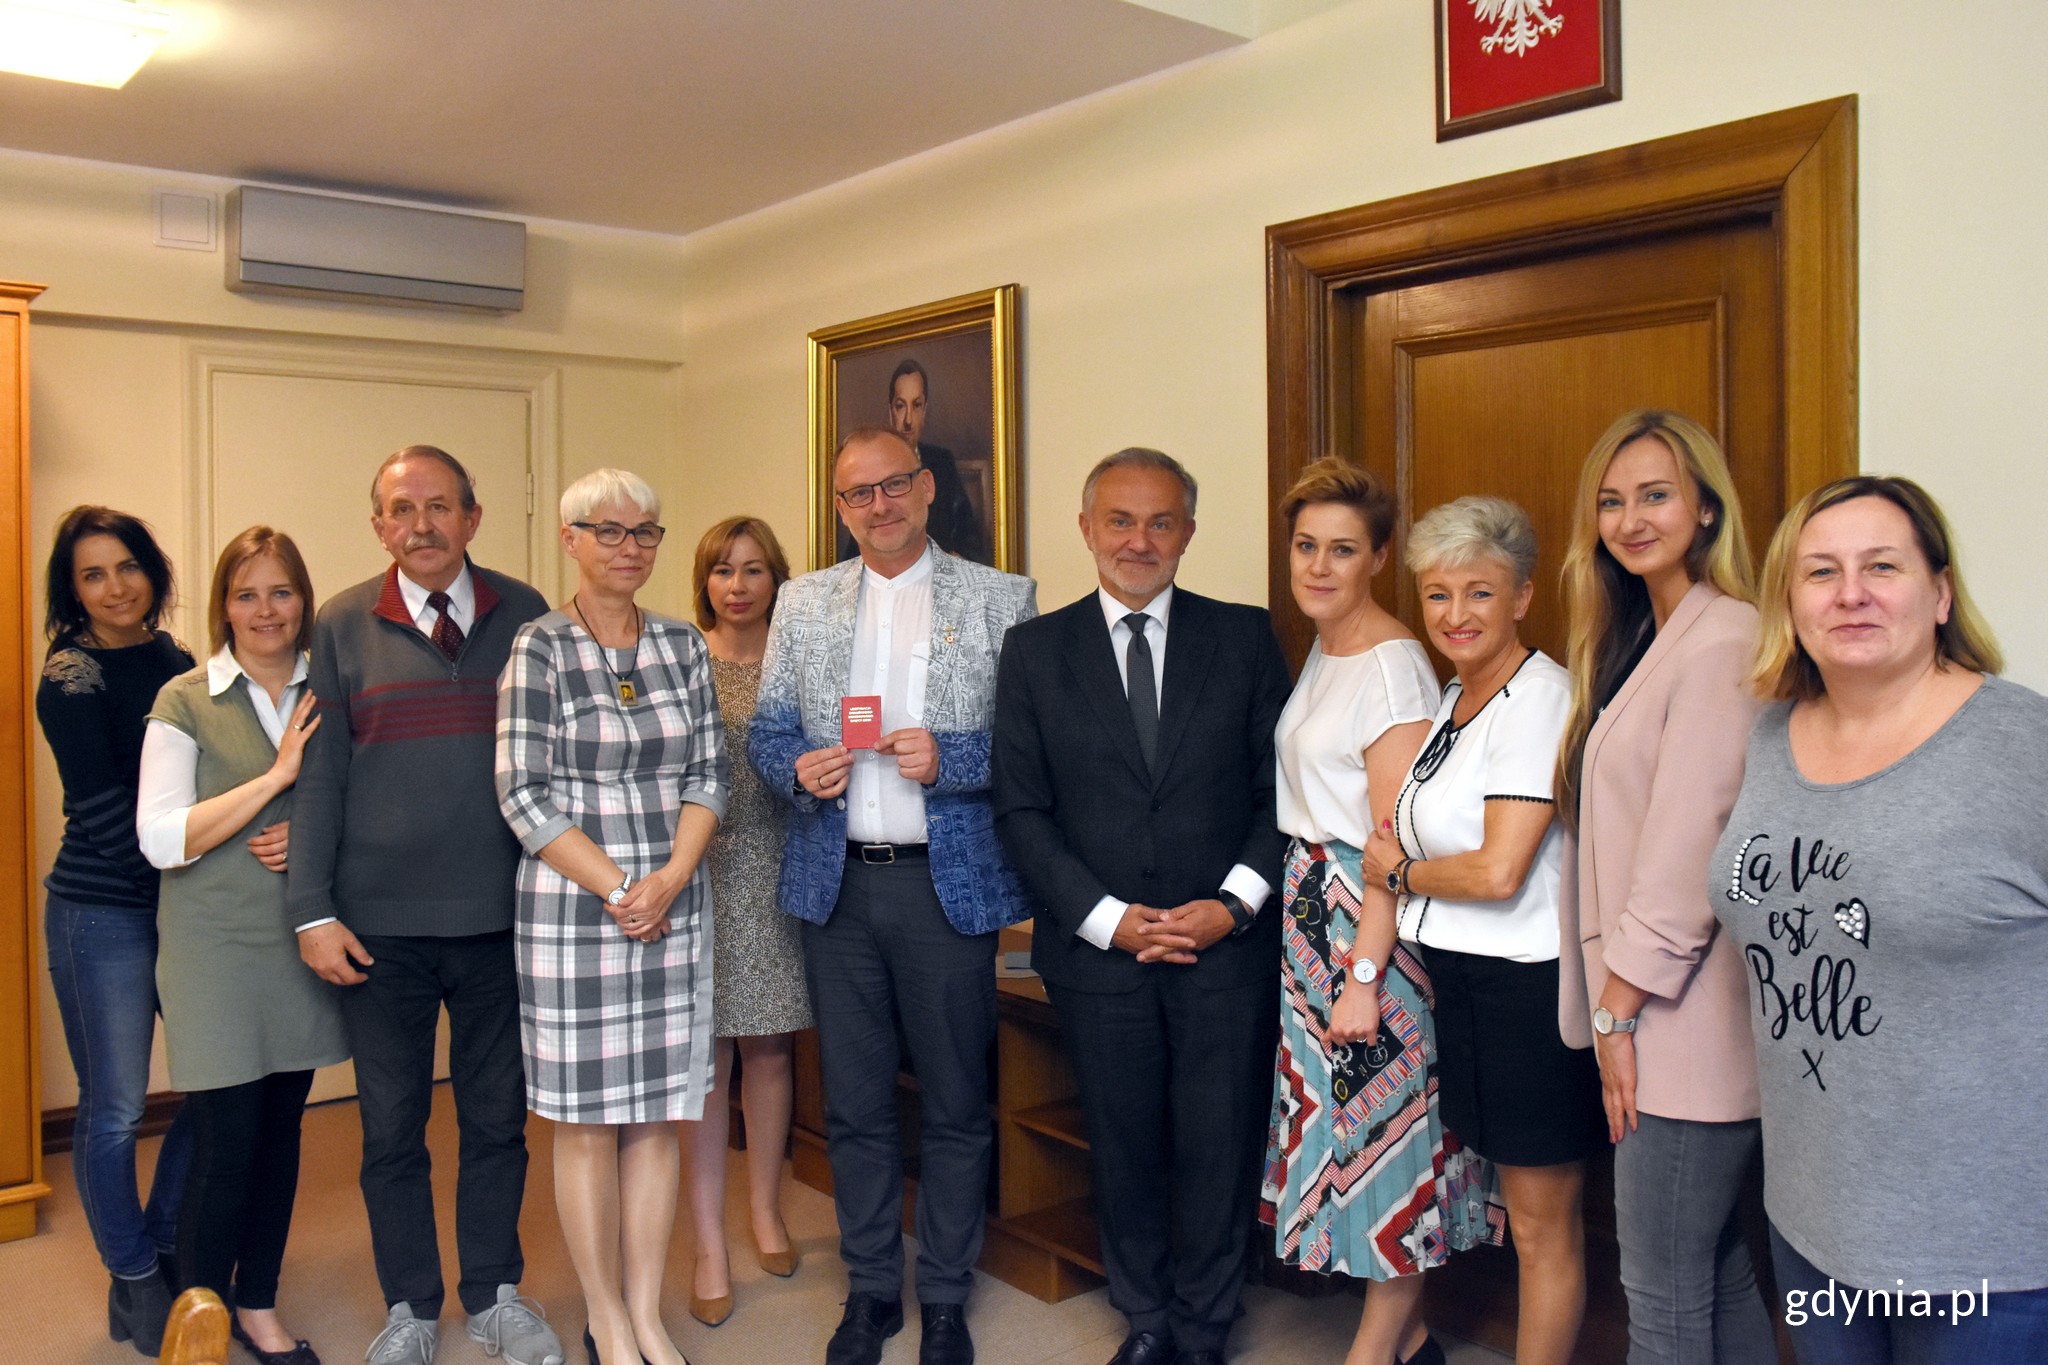 Członkowie Klubu Honorowych Dawców Krwi przy Urzędzie Miasta Gdyni z wiceprezydentem Guciem, fot. gdynia.pl